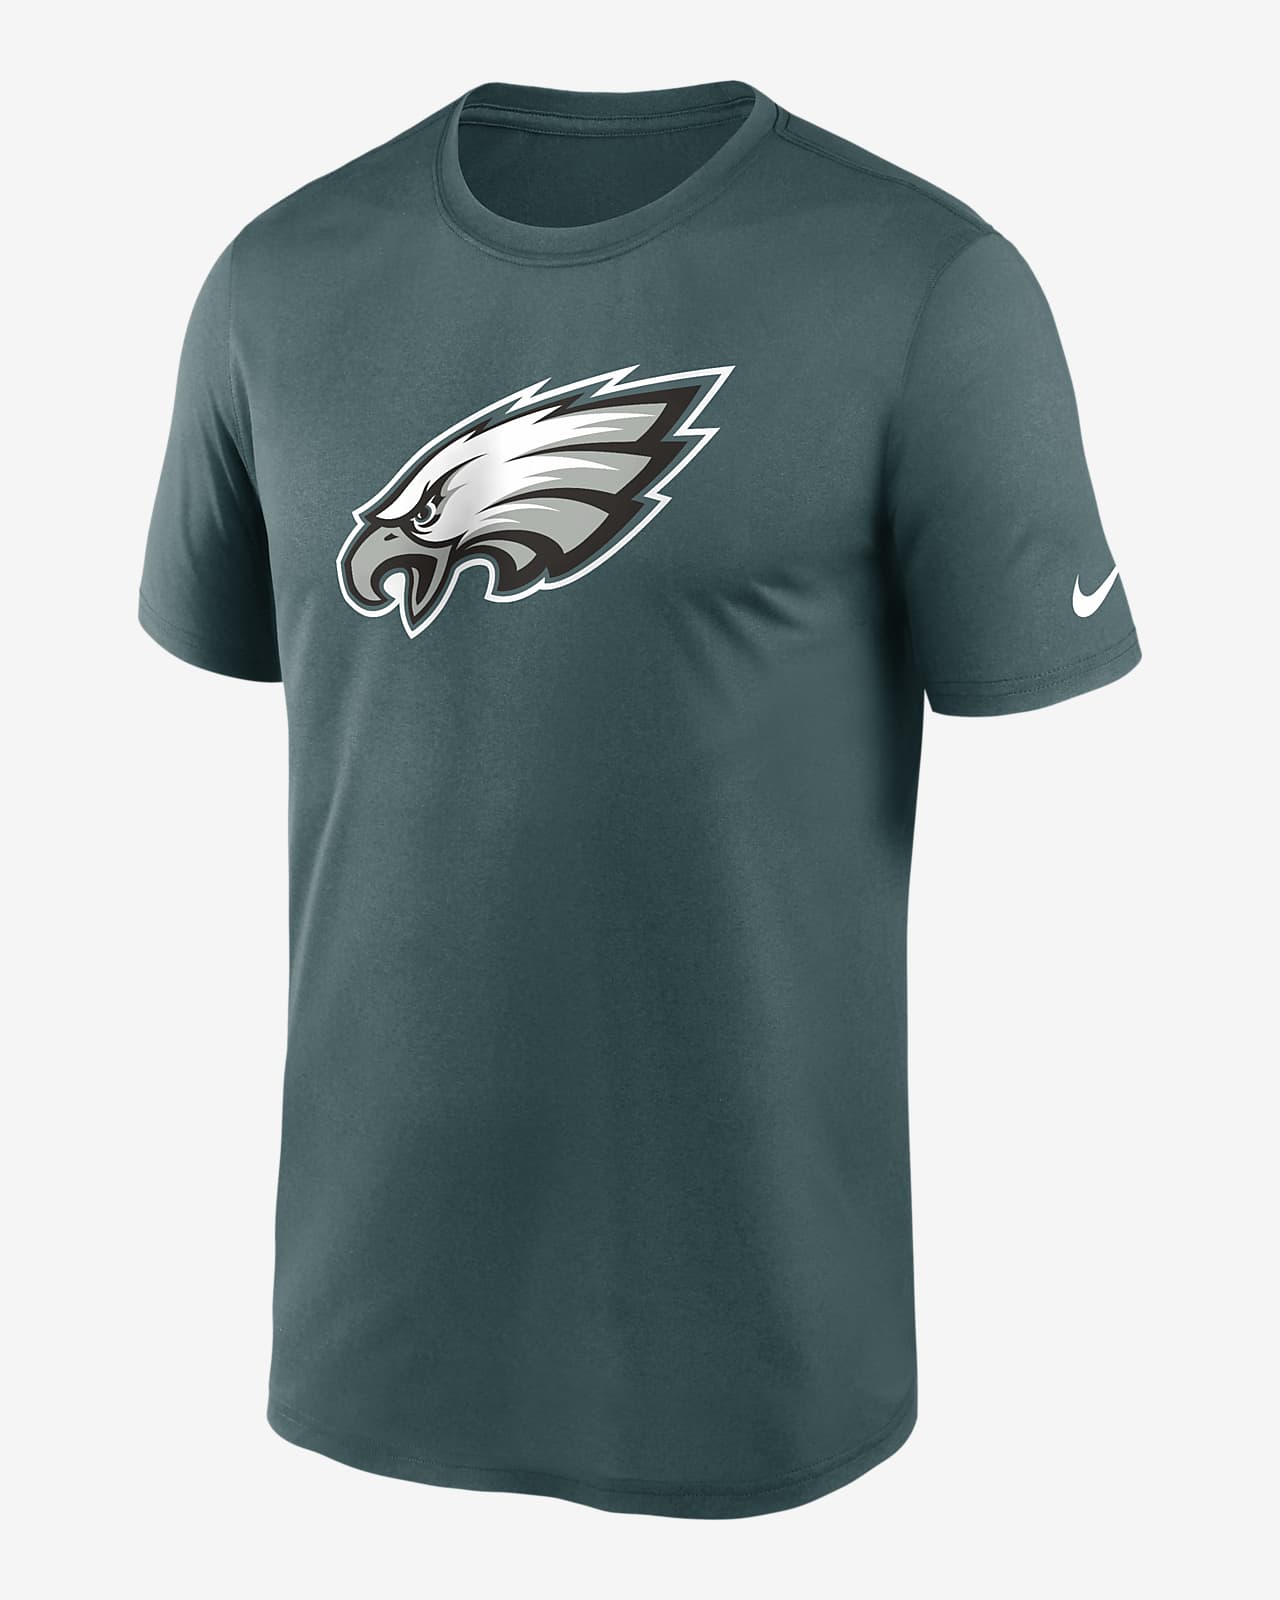 Philadelphia Eagles Shirts (Lot Of 2) Mens 3XL